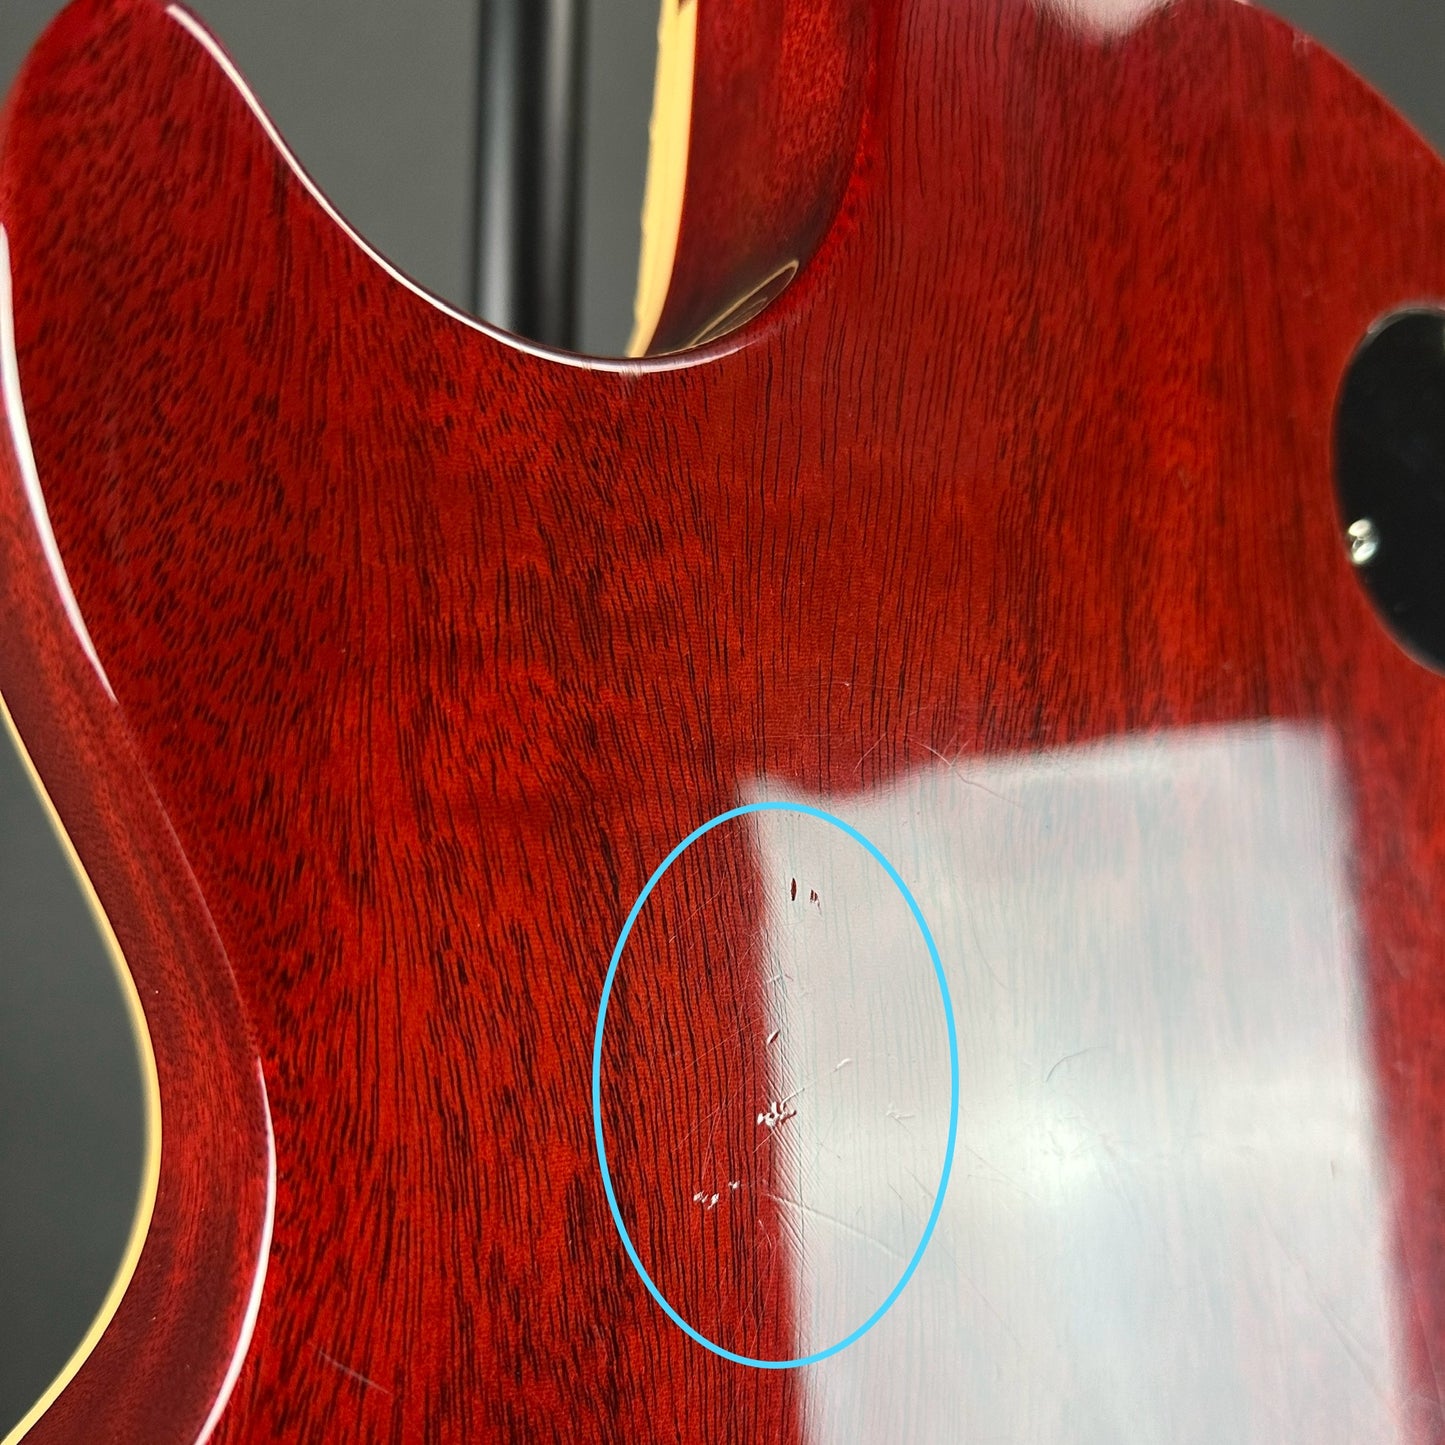 Marks on back of Used 2005 Gibson Les Paul Standard Lemonburst.